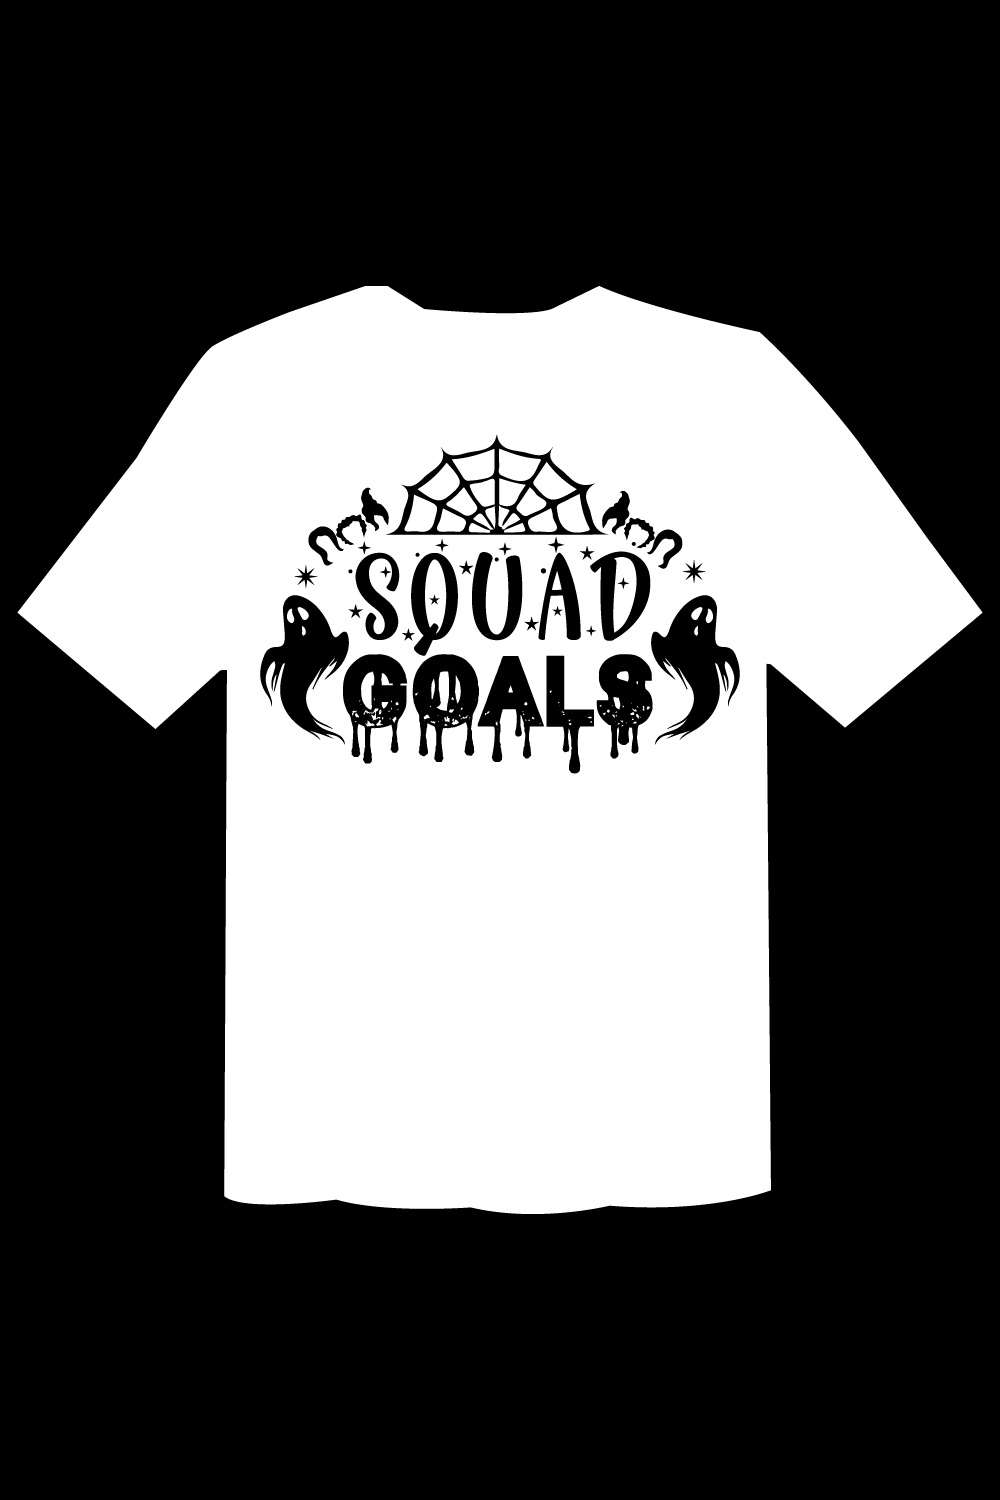 Squad Goals T Shirt Cut File pinterest preview image.